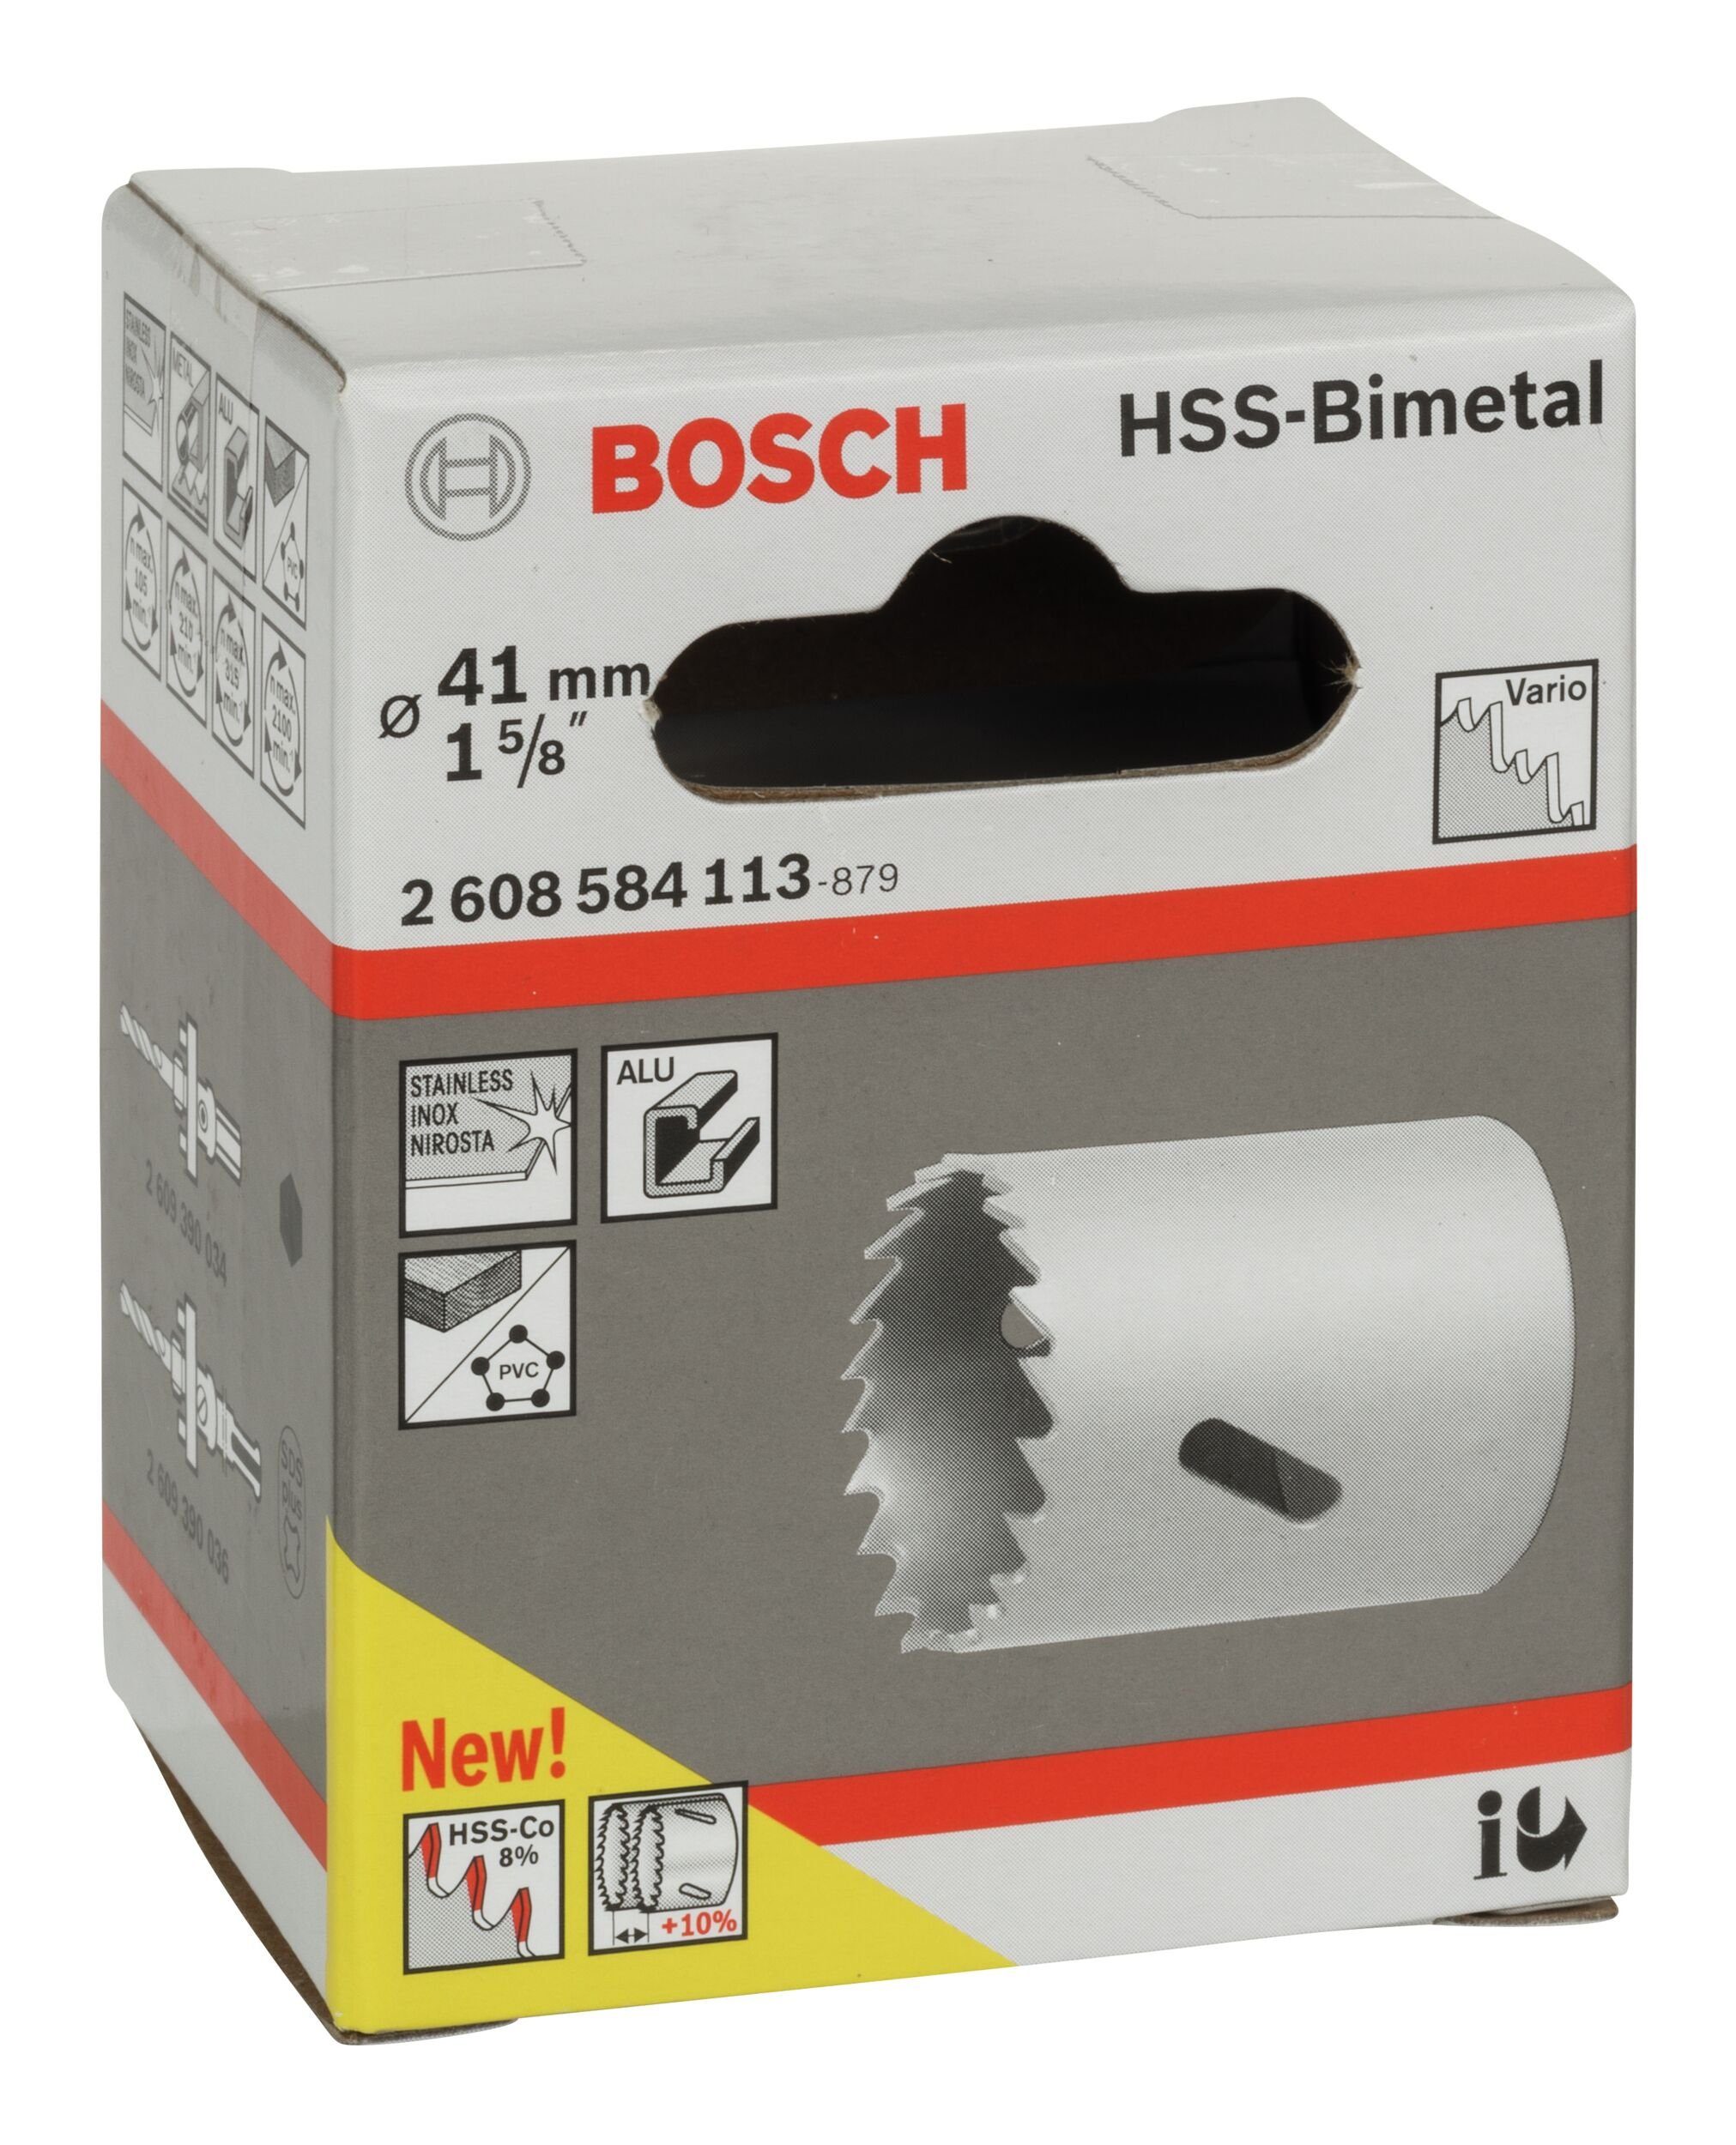 BOSCH Lochsäge, Ø 41 1 für mm, - Standardadapter / HSS-Bimetall 5/8"